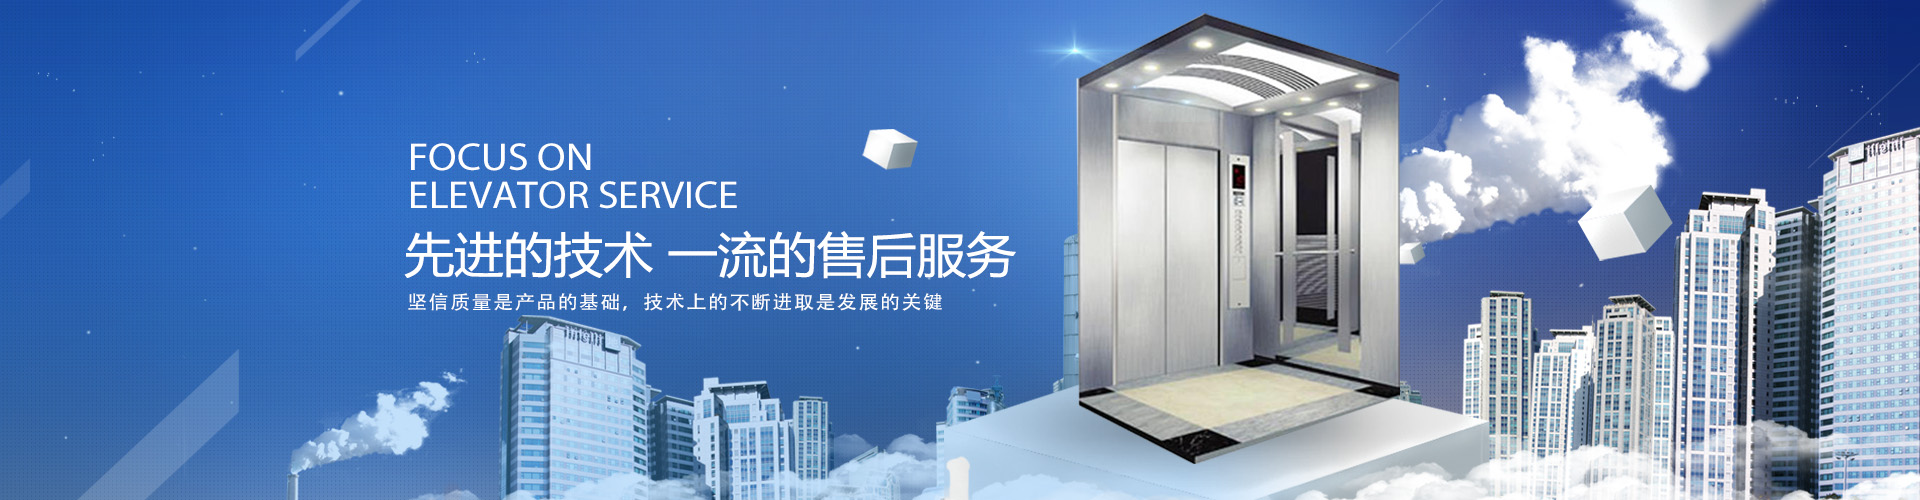 广州苏菱电梯设备有限公司,广州加装电梯,广州安装电梯,广州电梯采购